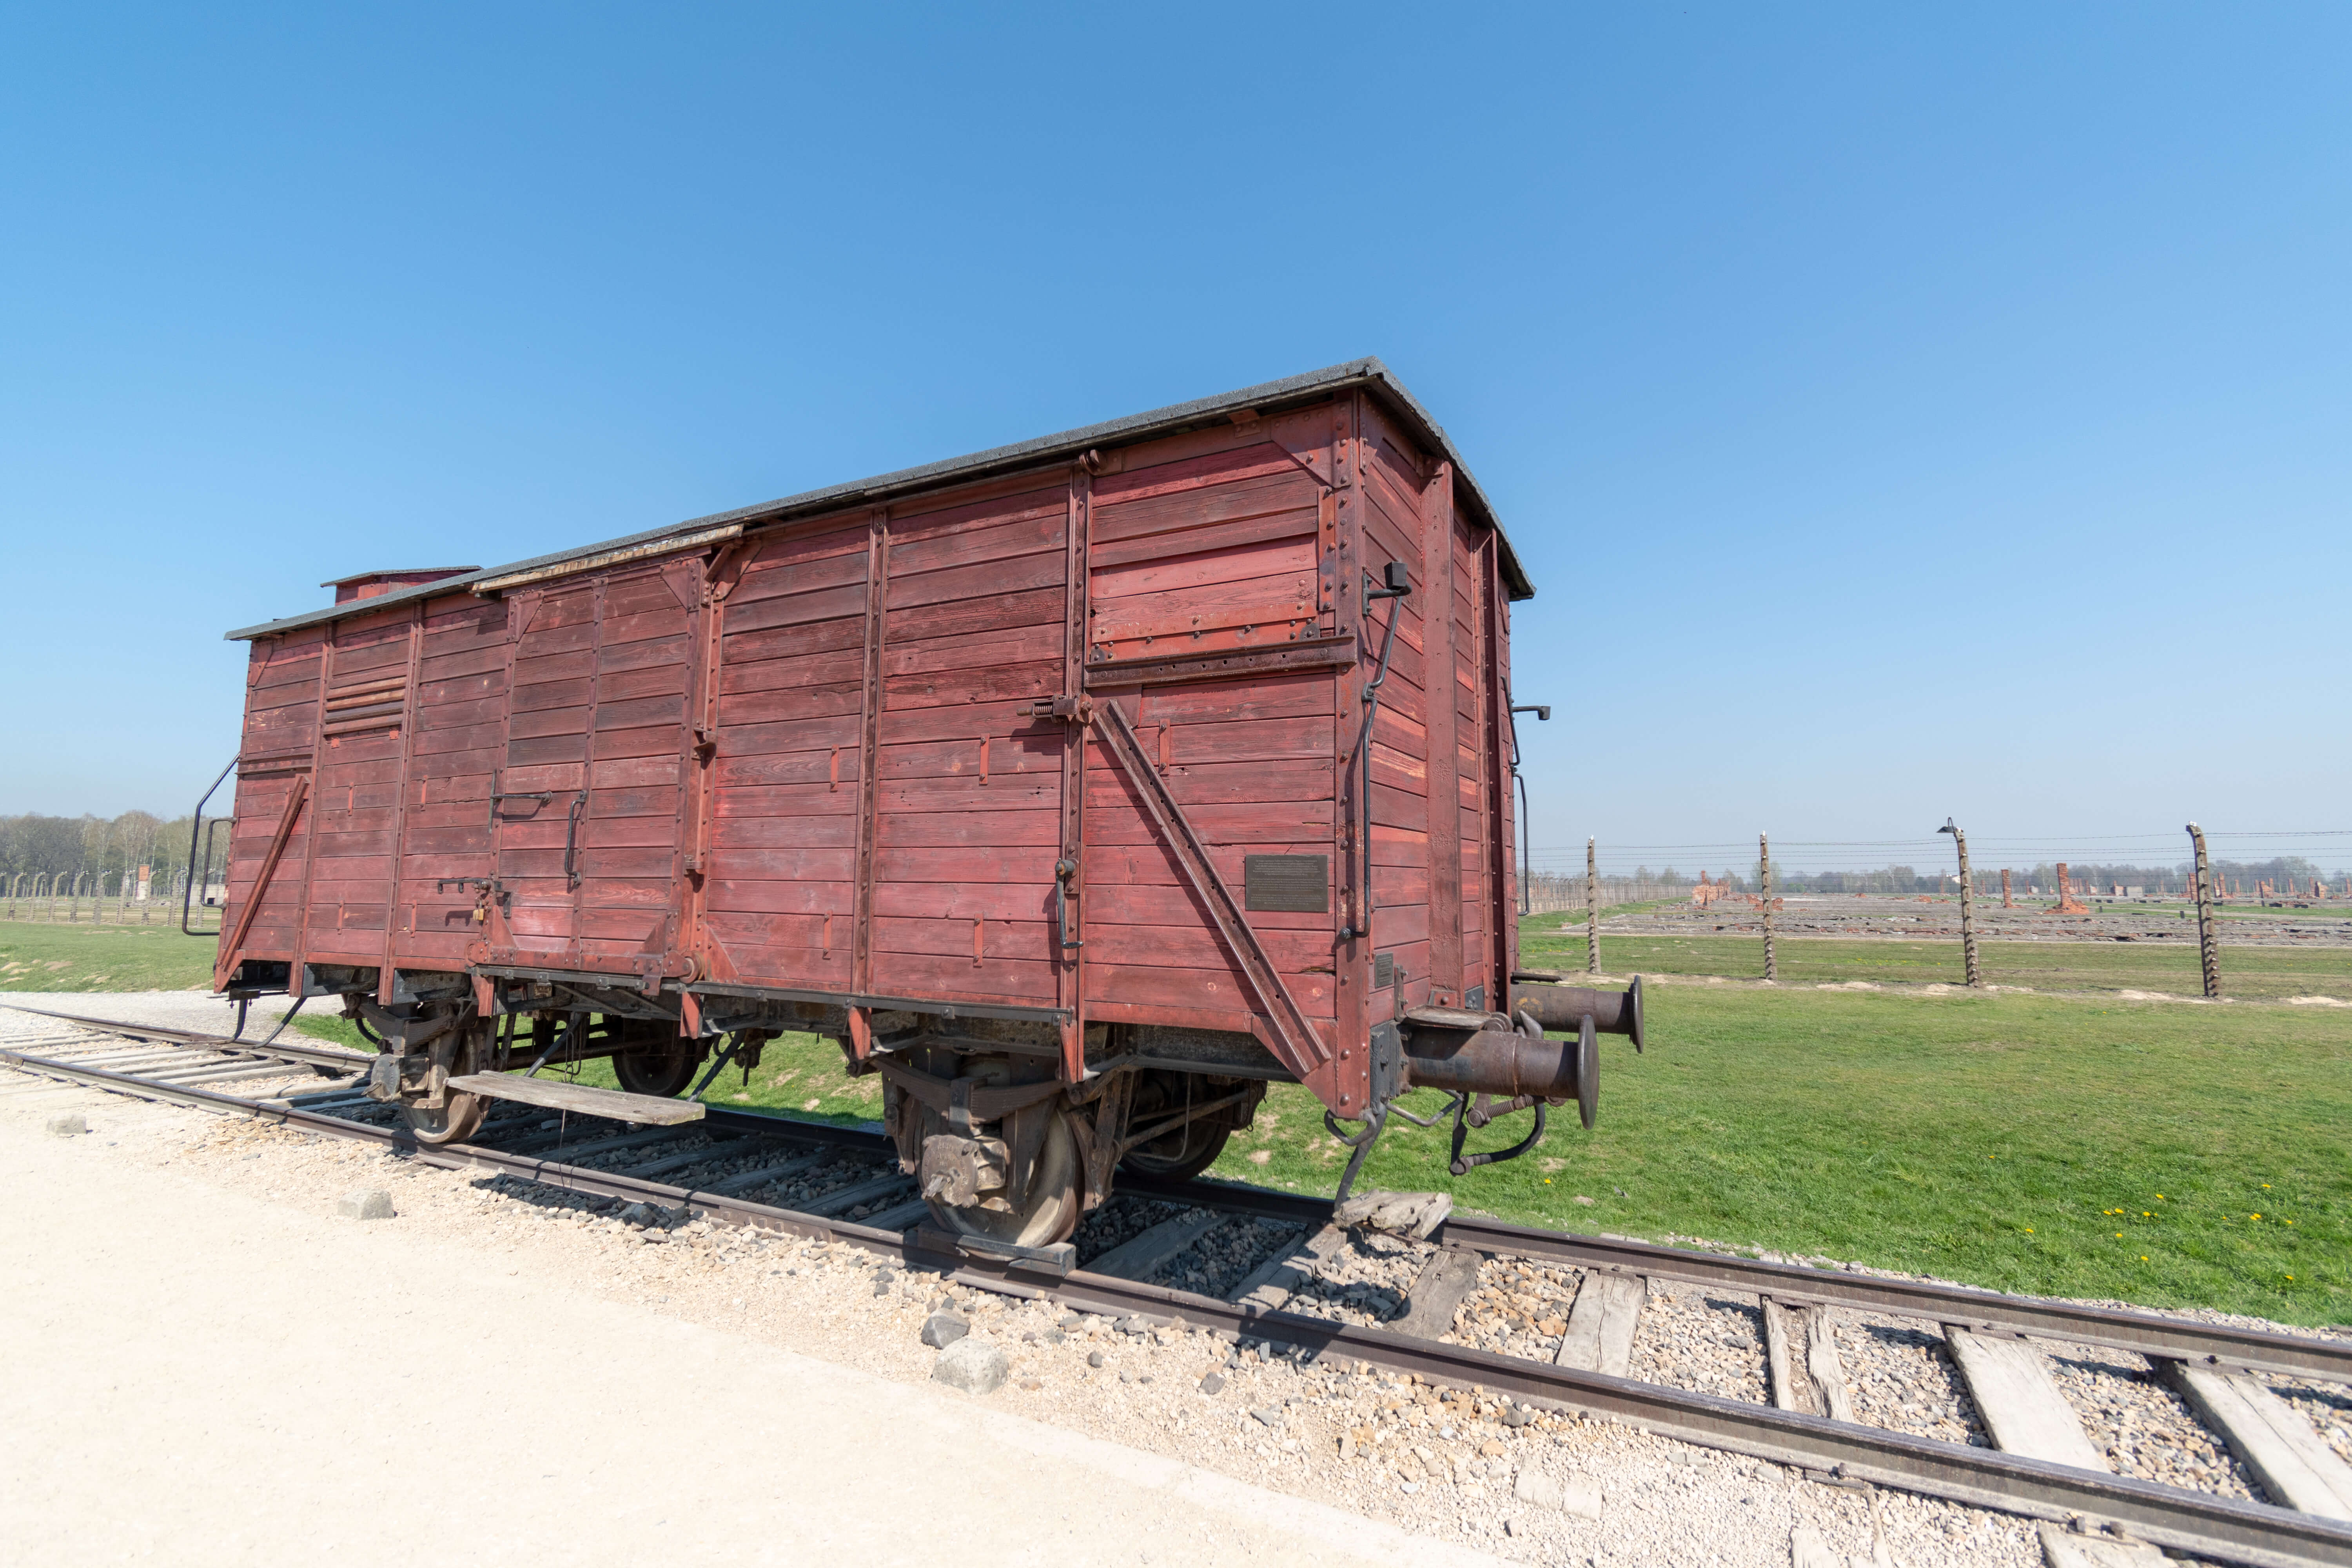 Birkenau train car